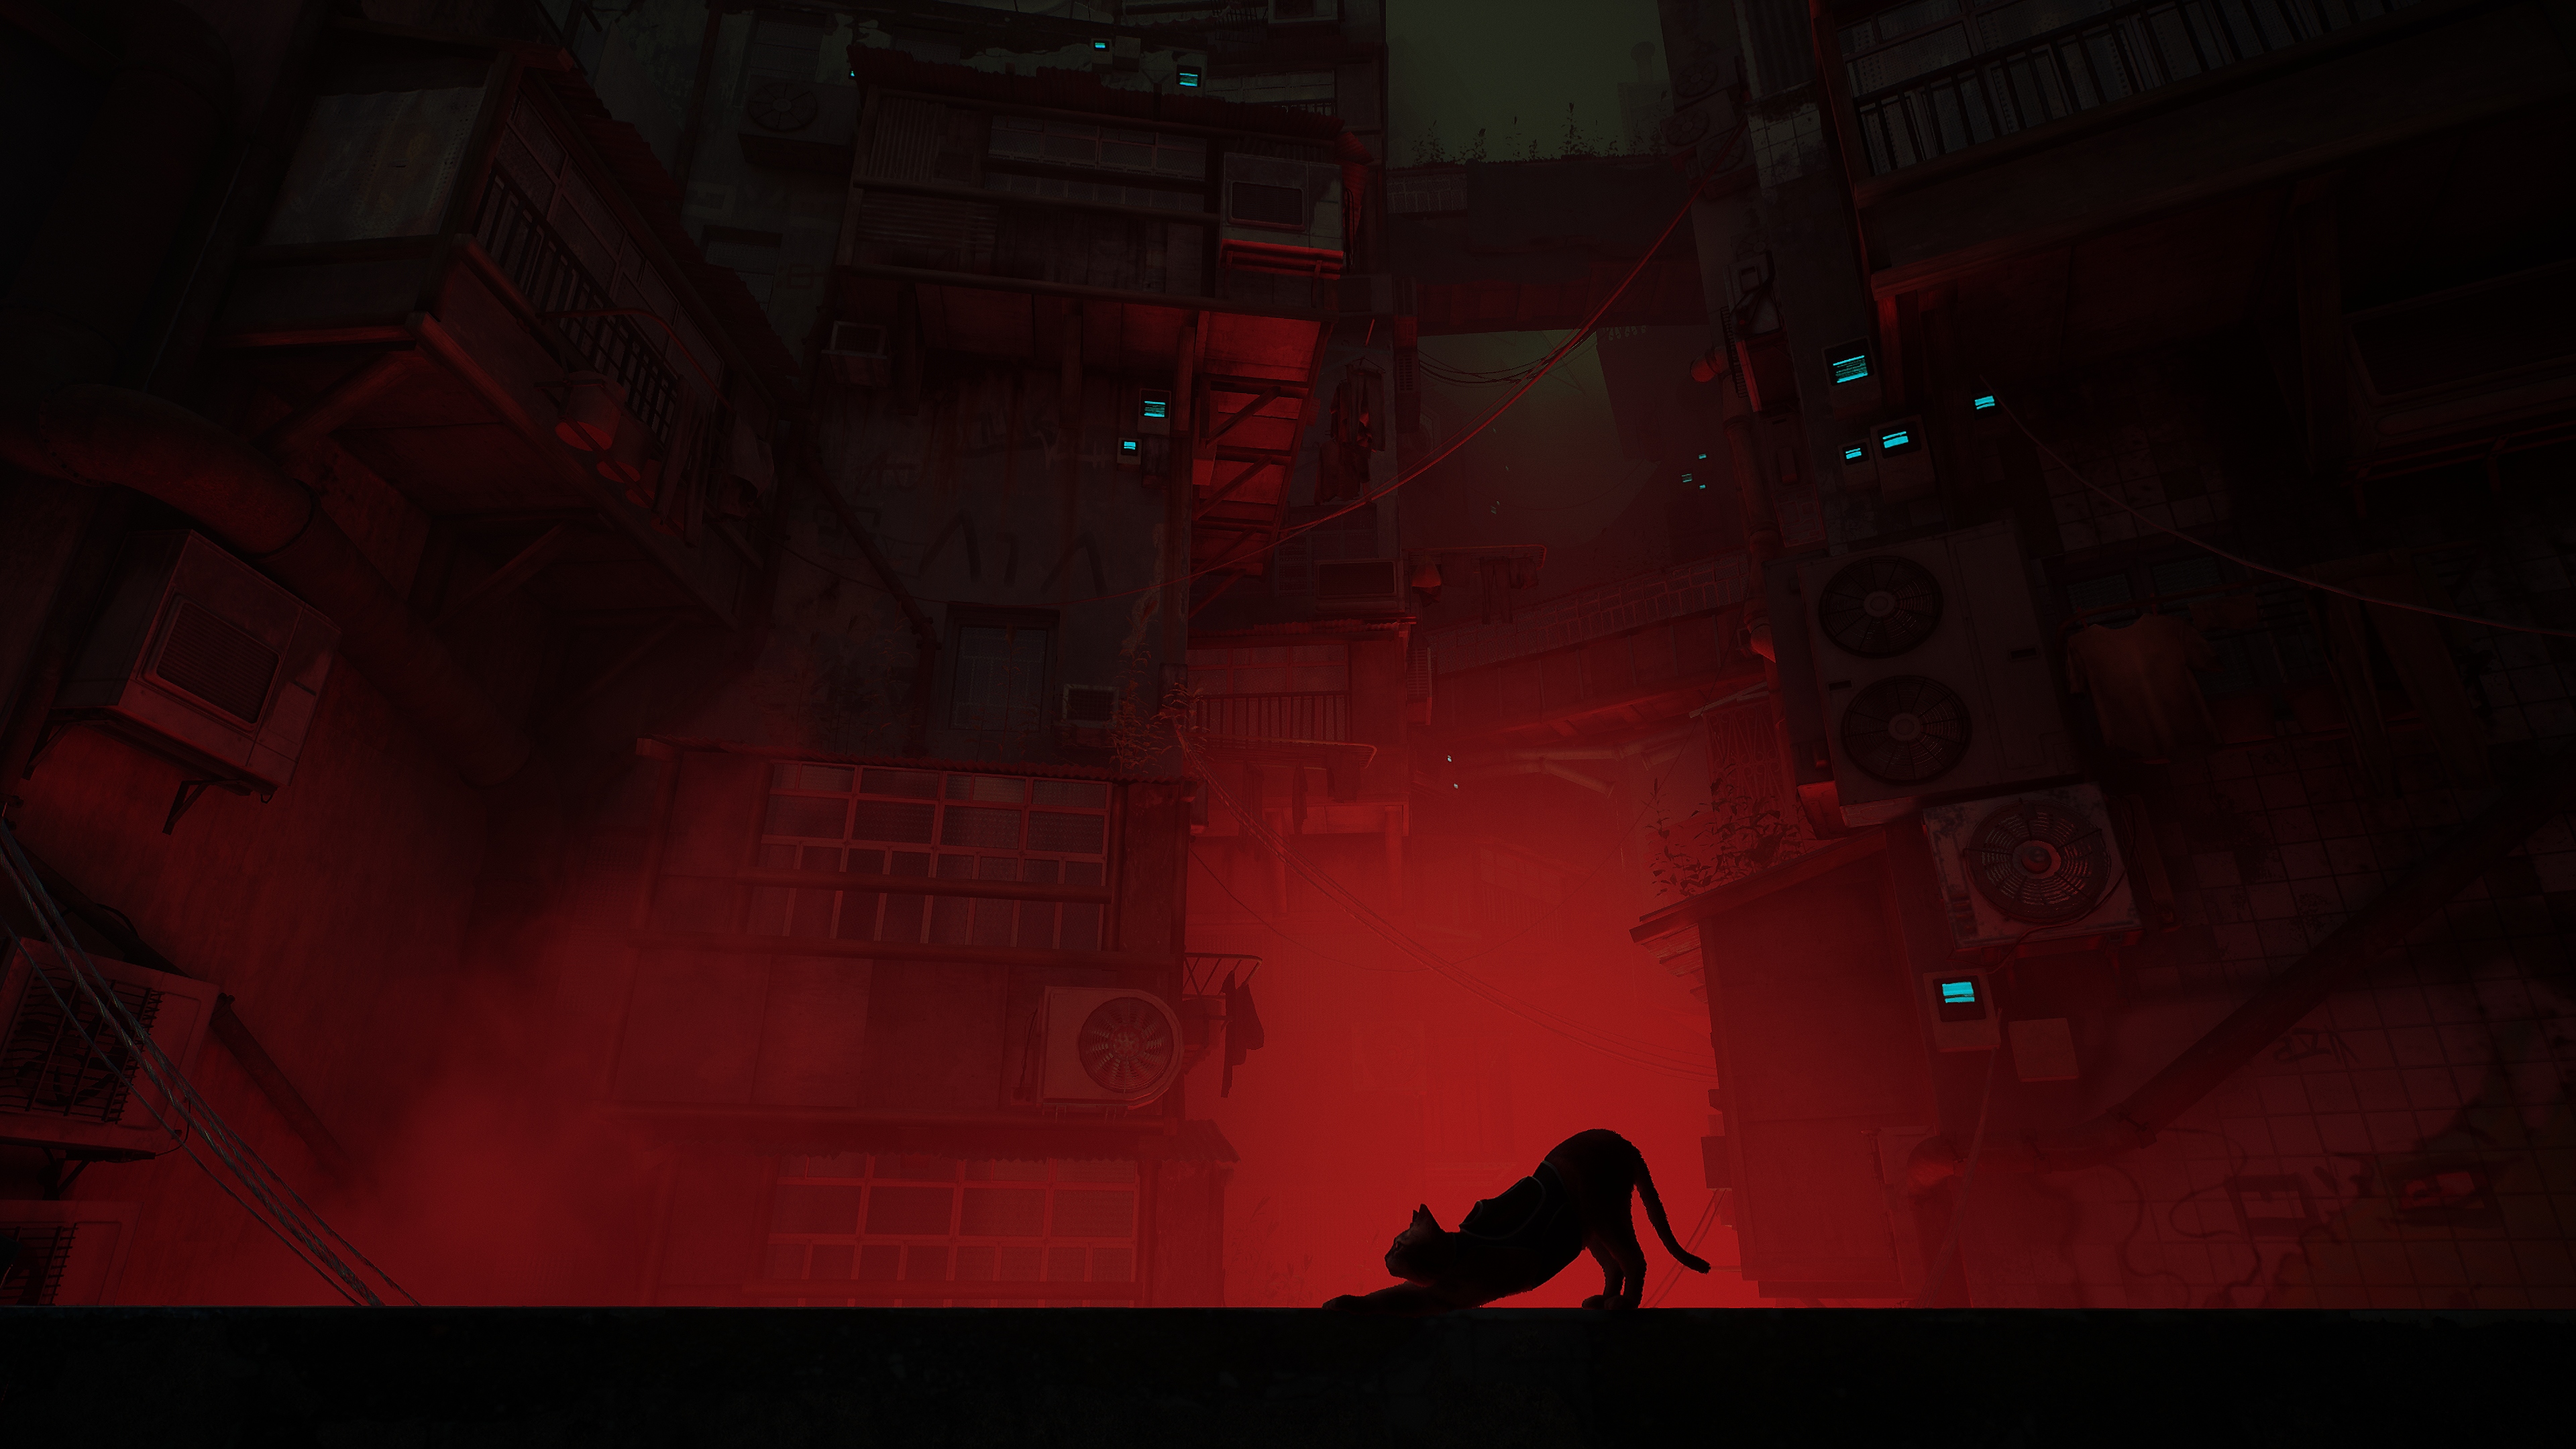 لقطة شاشة للعبة Stray تعرض صورة ظلية لقط